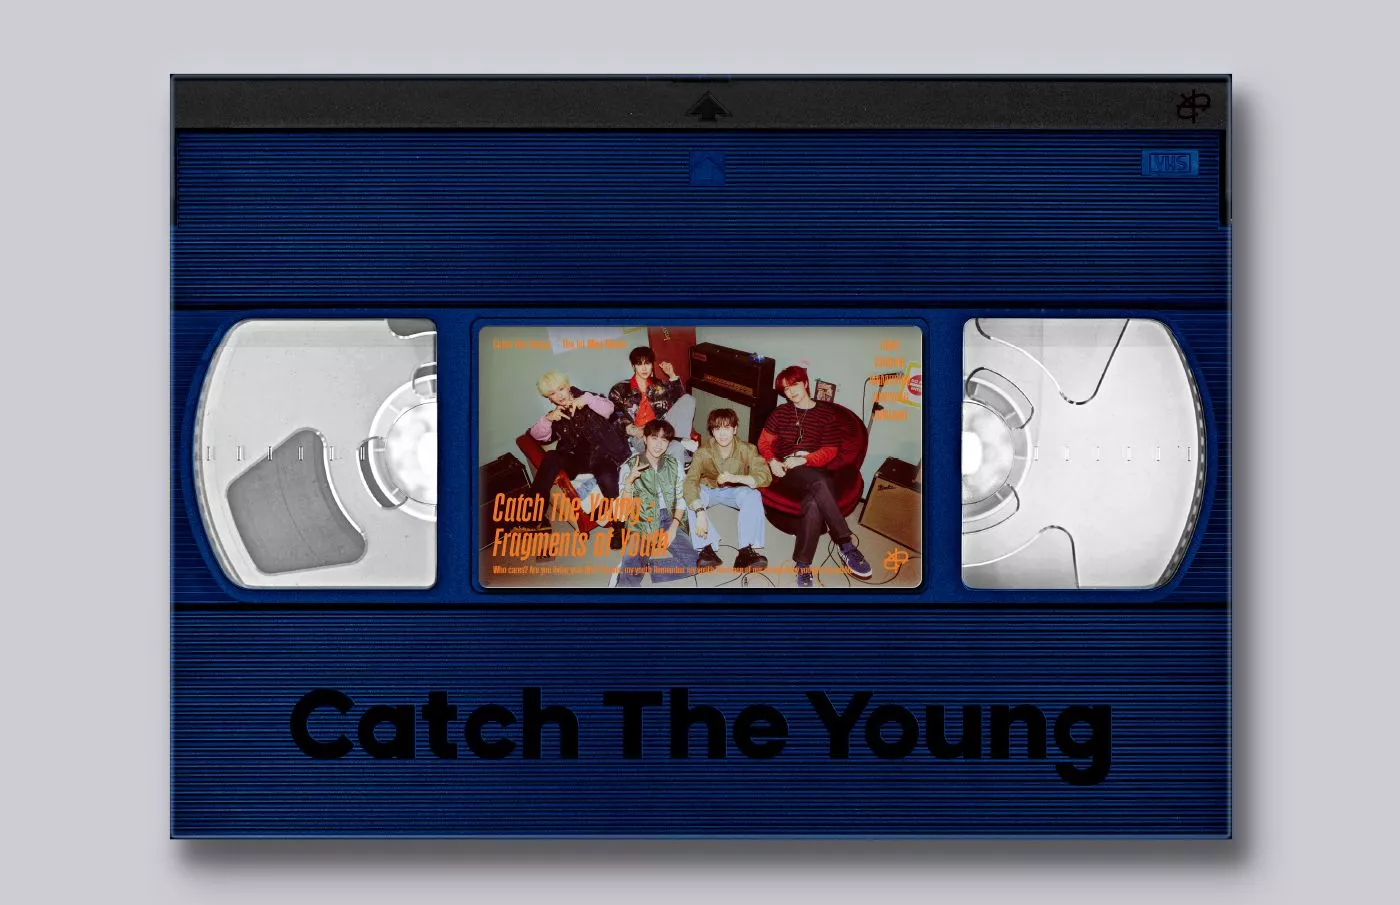 Группа Catch The Young: профайл и факты об участниках